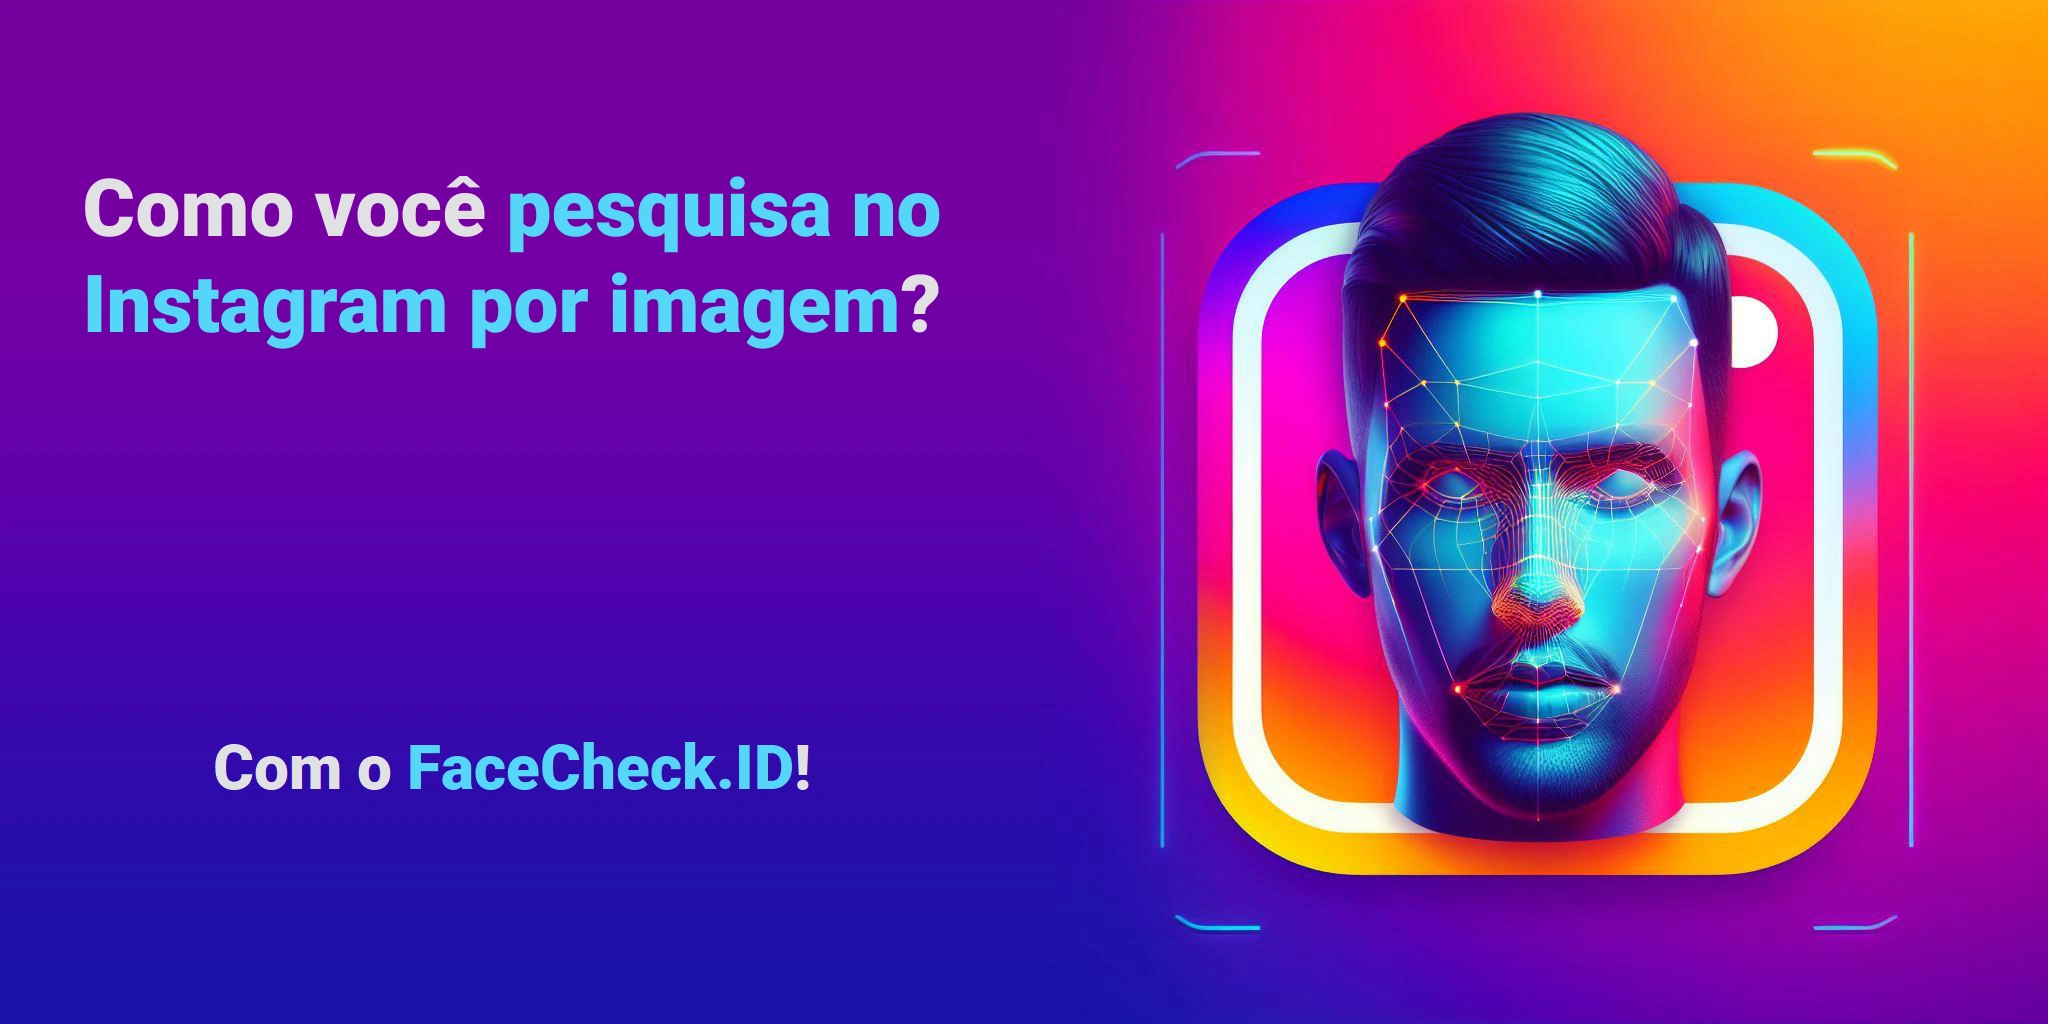 Como você pesquisa no Instagram por imagem? Com o FaceCheck.ID!